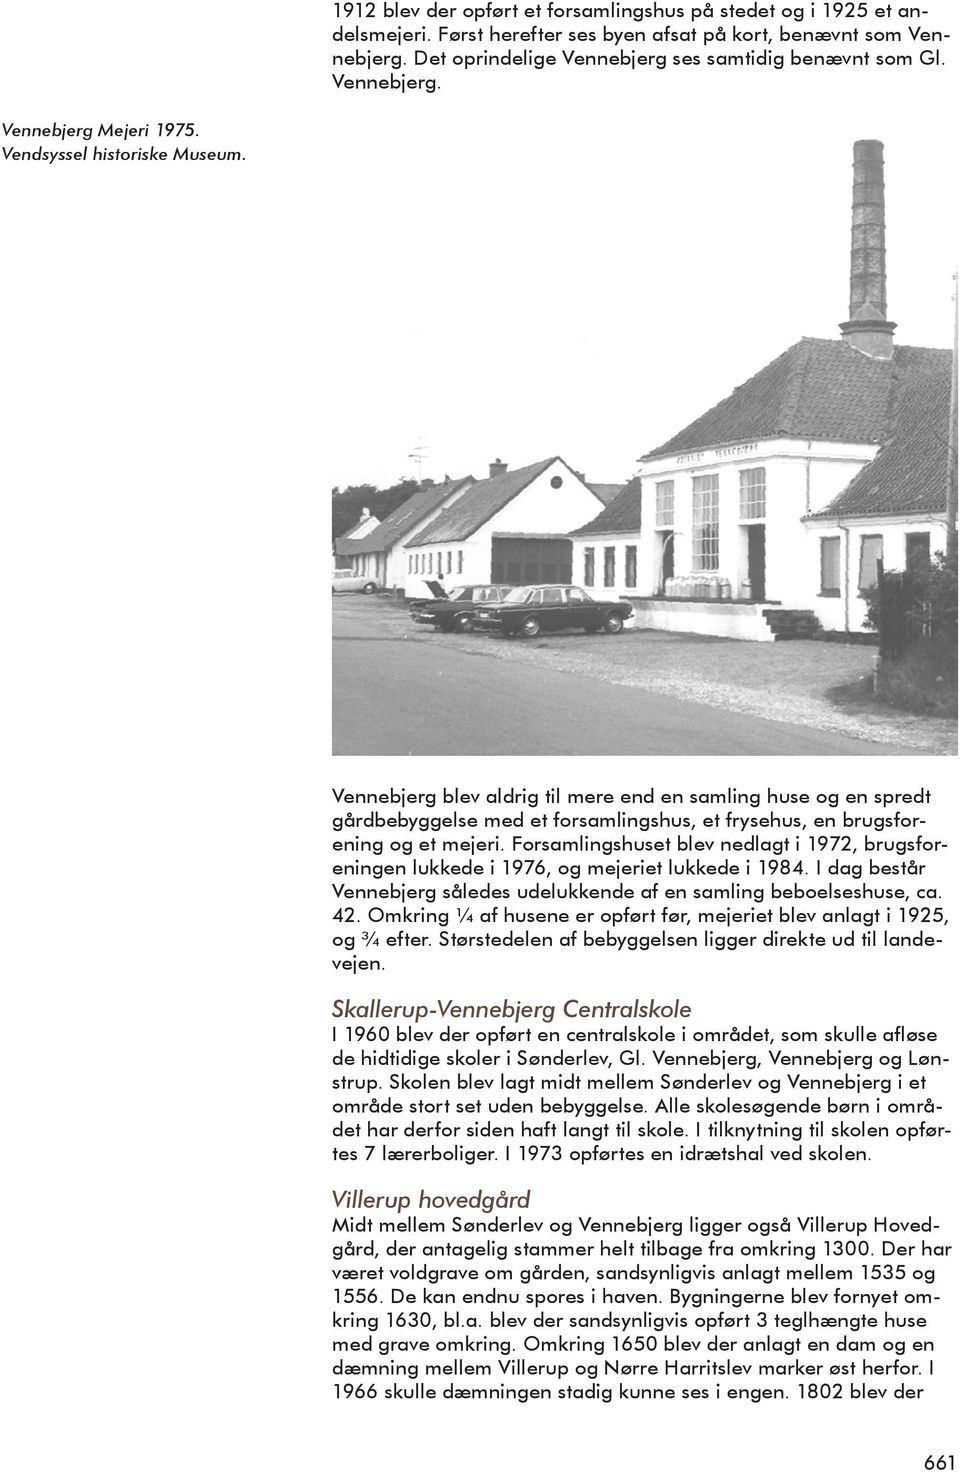 Vennebjerg blev aldrig til mere end en samling huse og en spredt gårdbebyggelse med et forsamlingshus, et frysehus, en brugsforening og et mejeri.